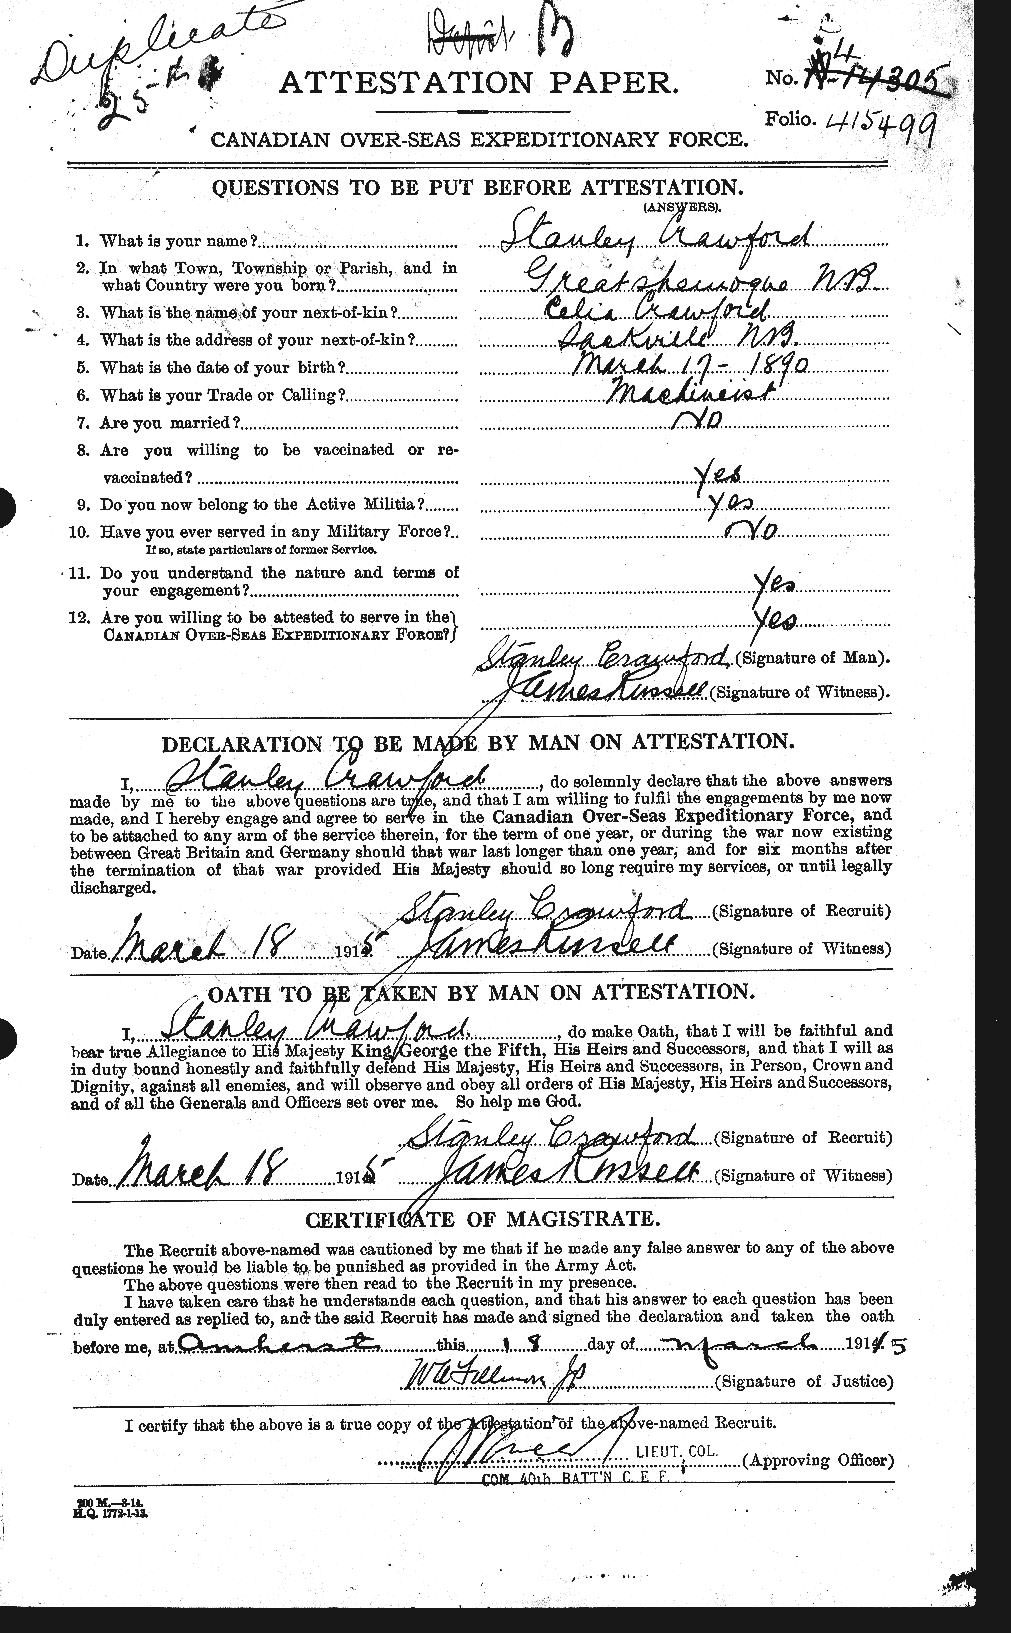 Dossiers du Personnel de la Première Guerre mondiale - CEC 061372a